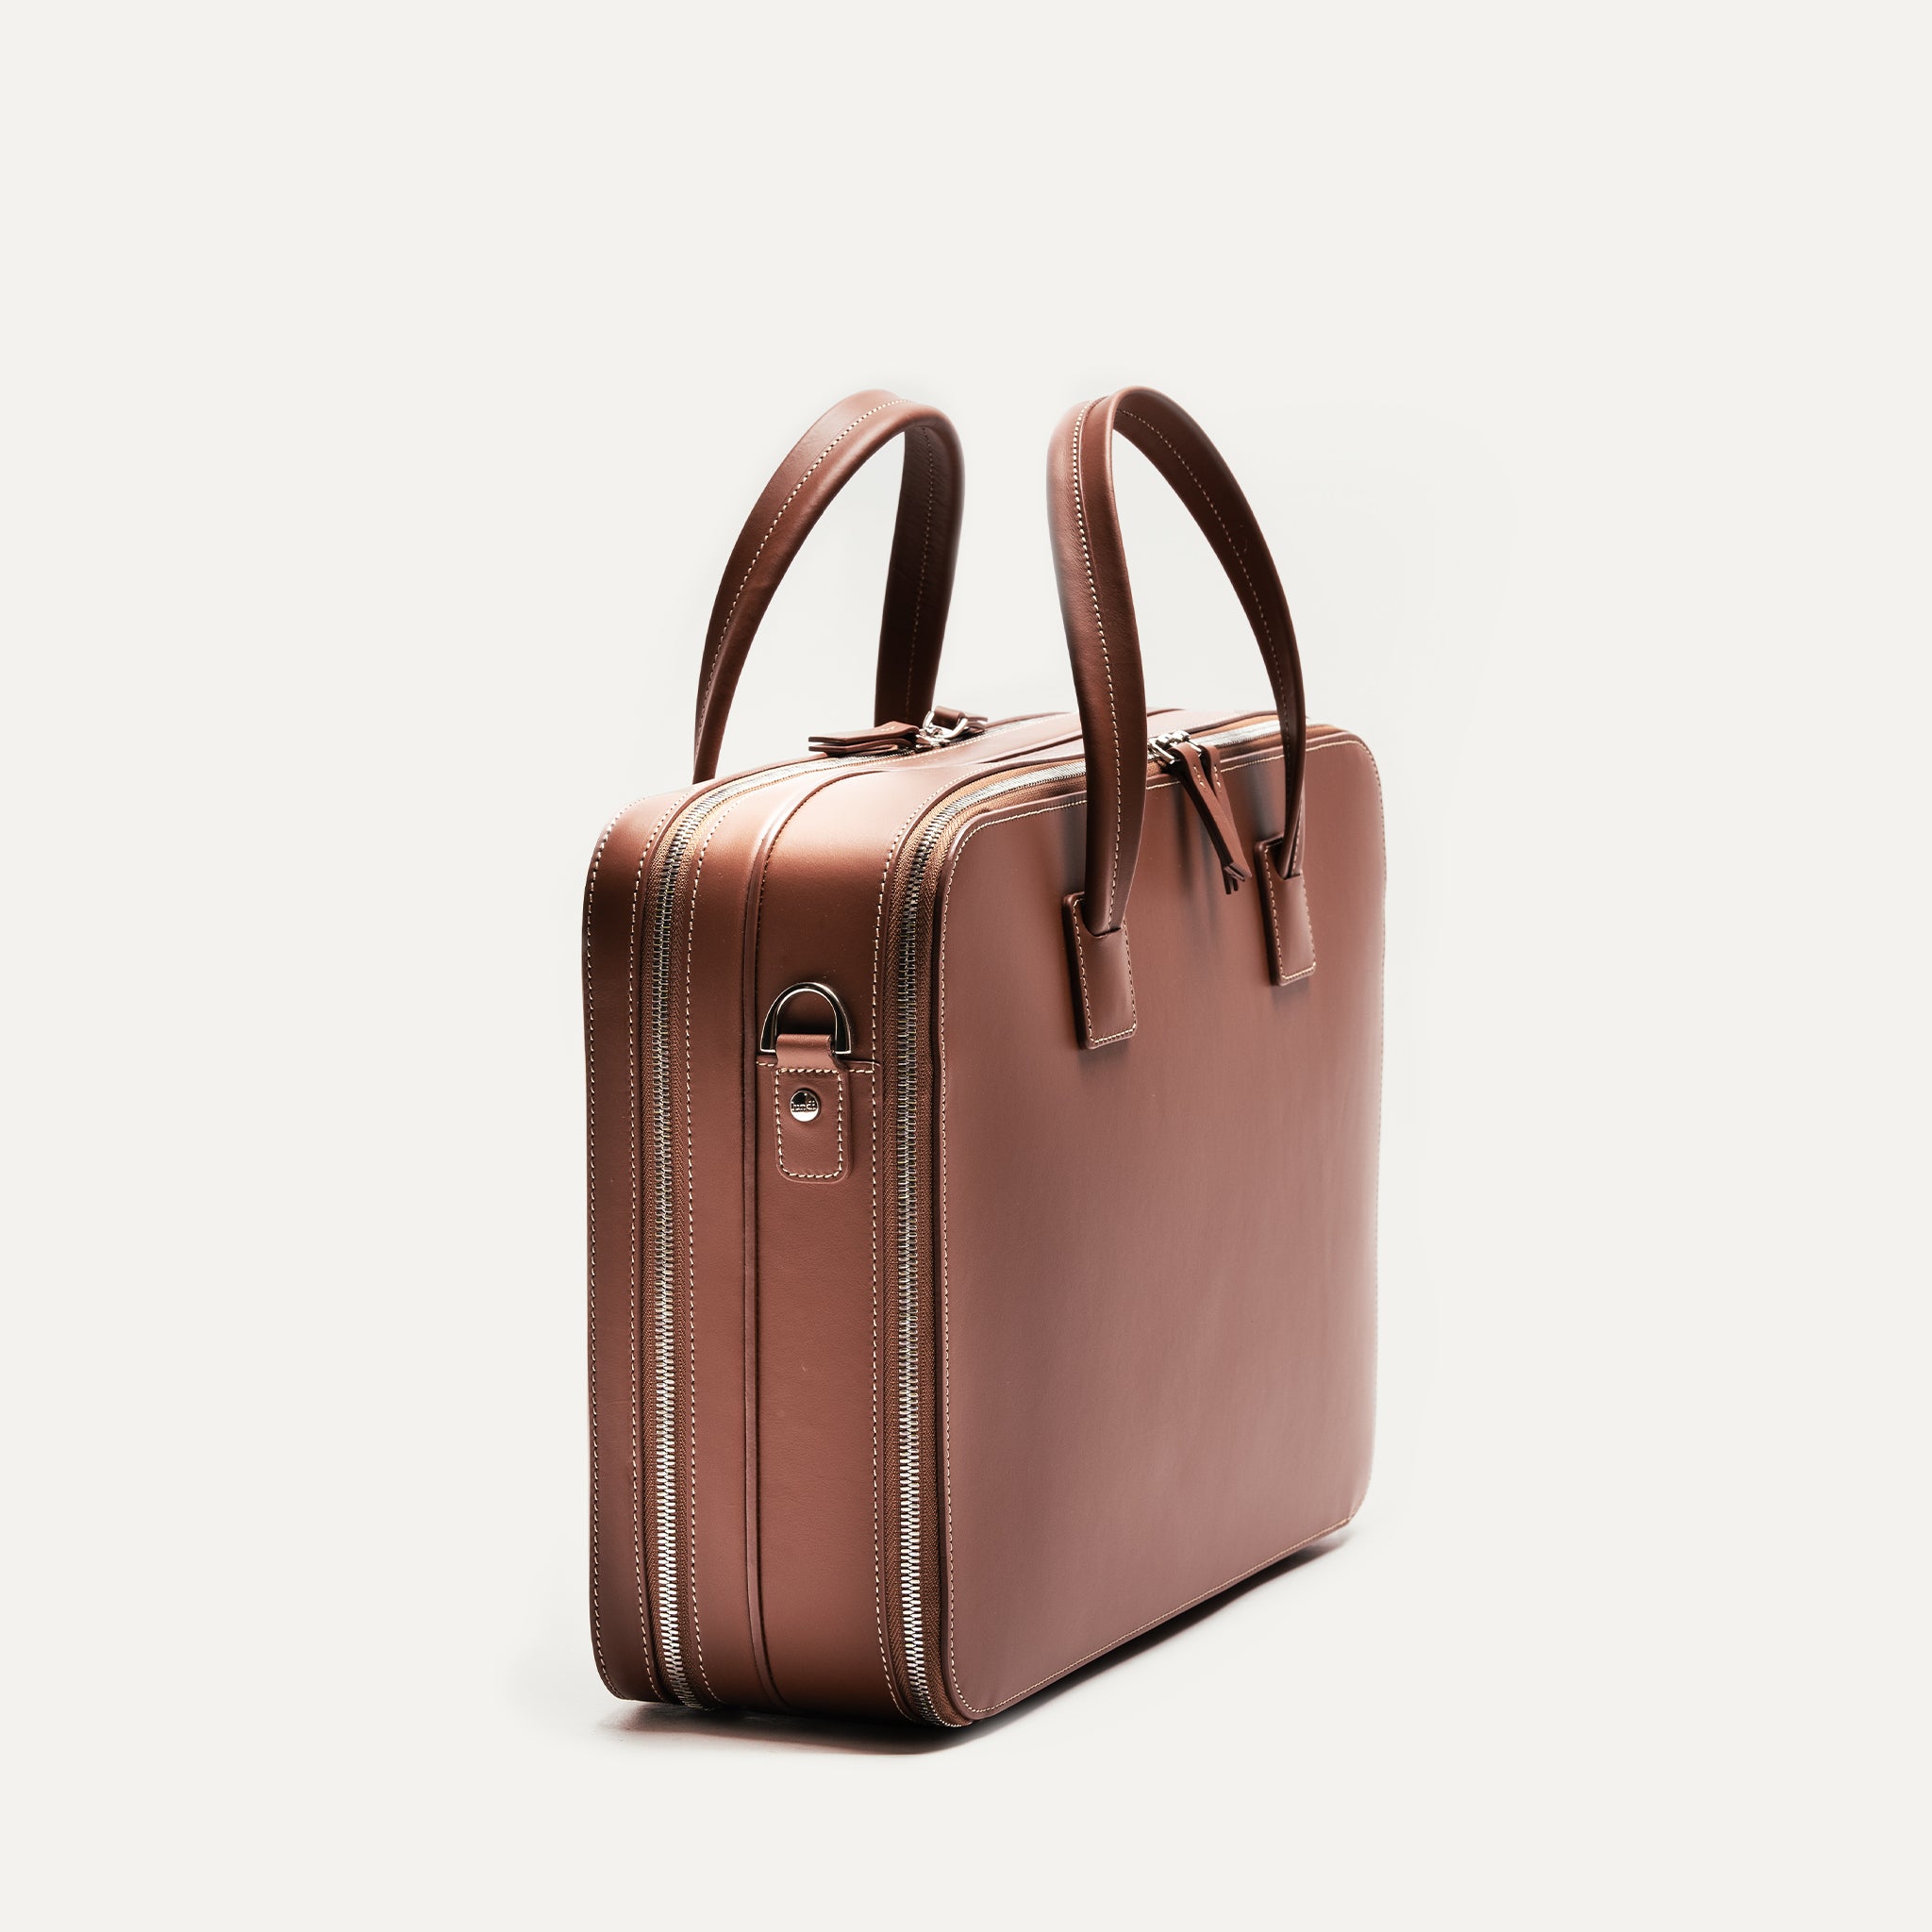 lundi 36-hour Travel bag | BELLECOURT Cognac